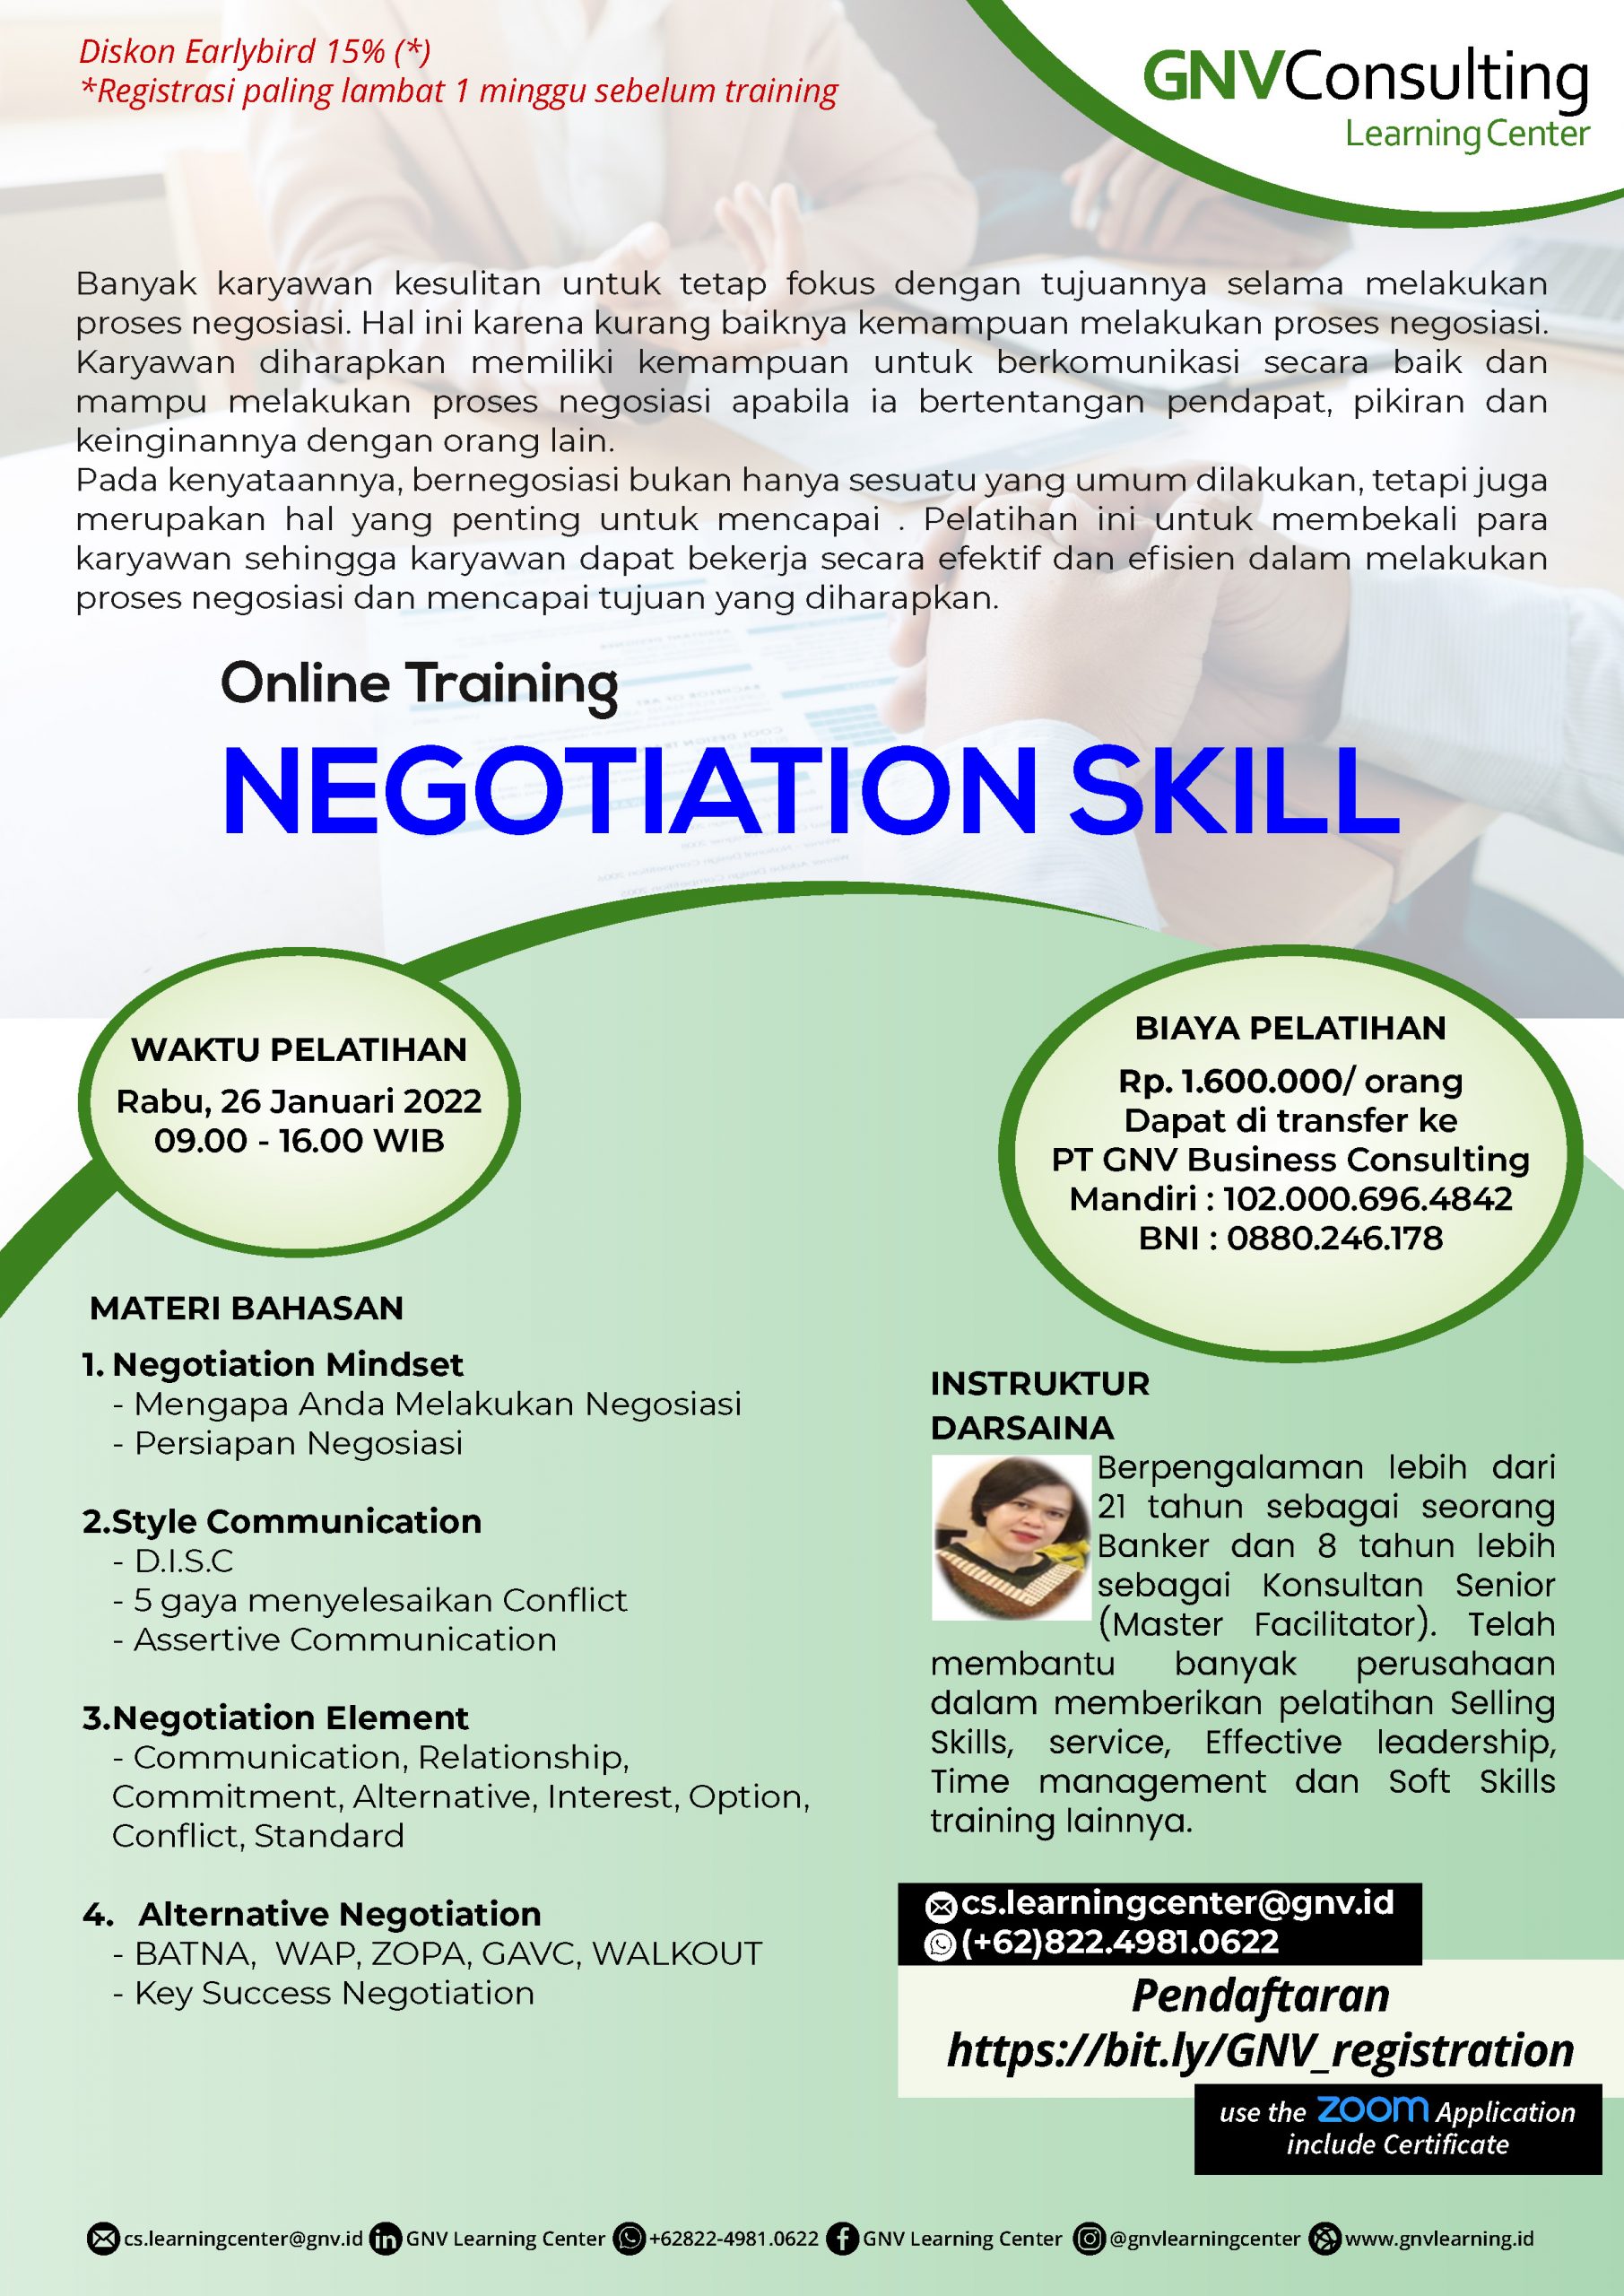 Negotiation Skills – Online Training